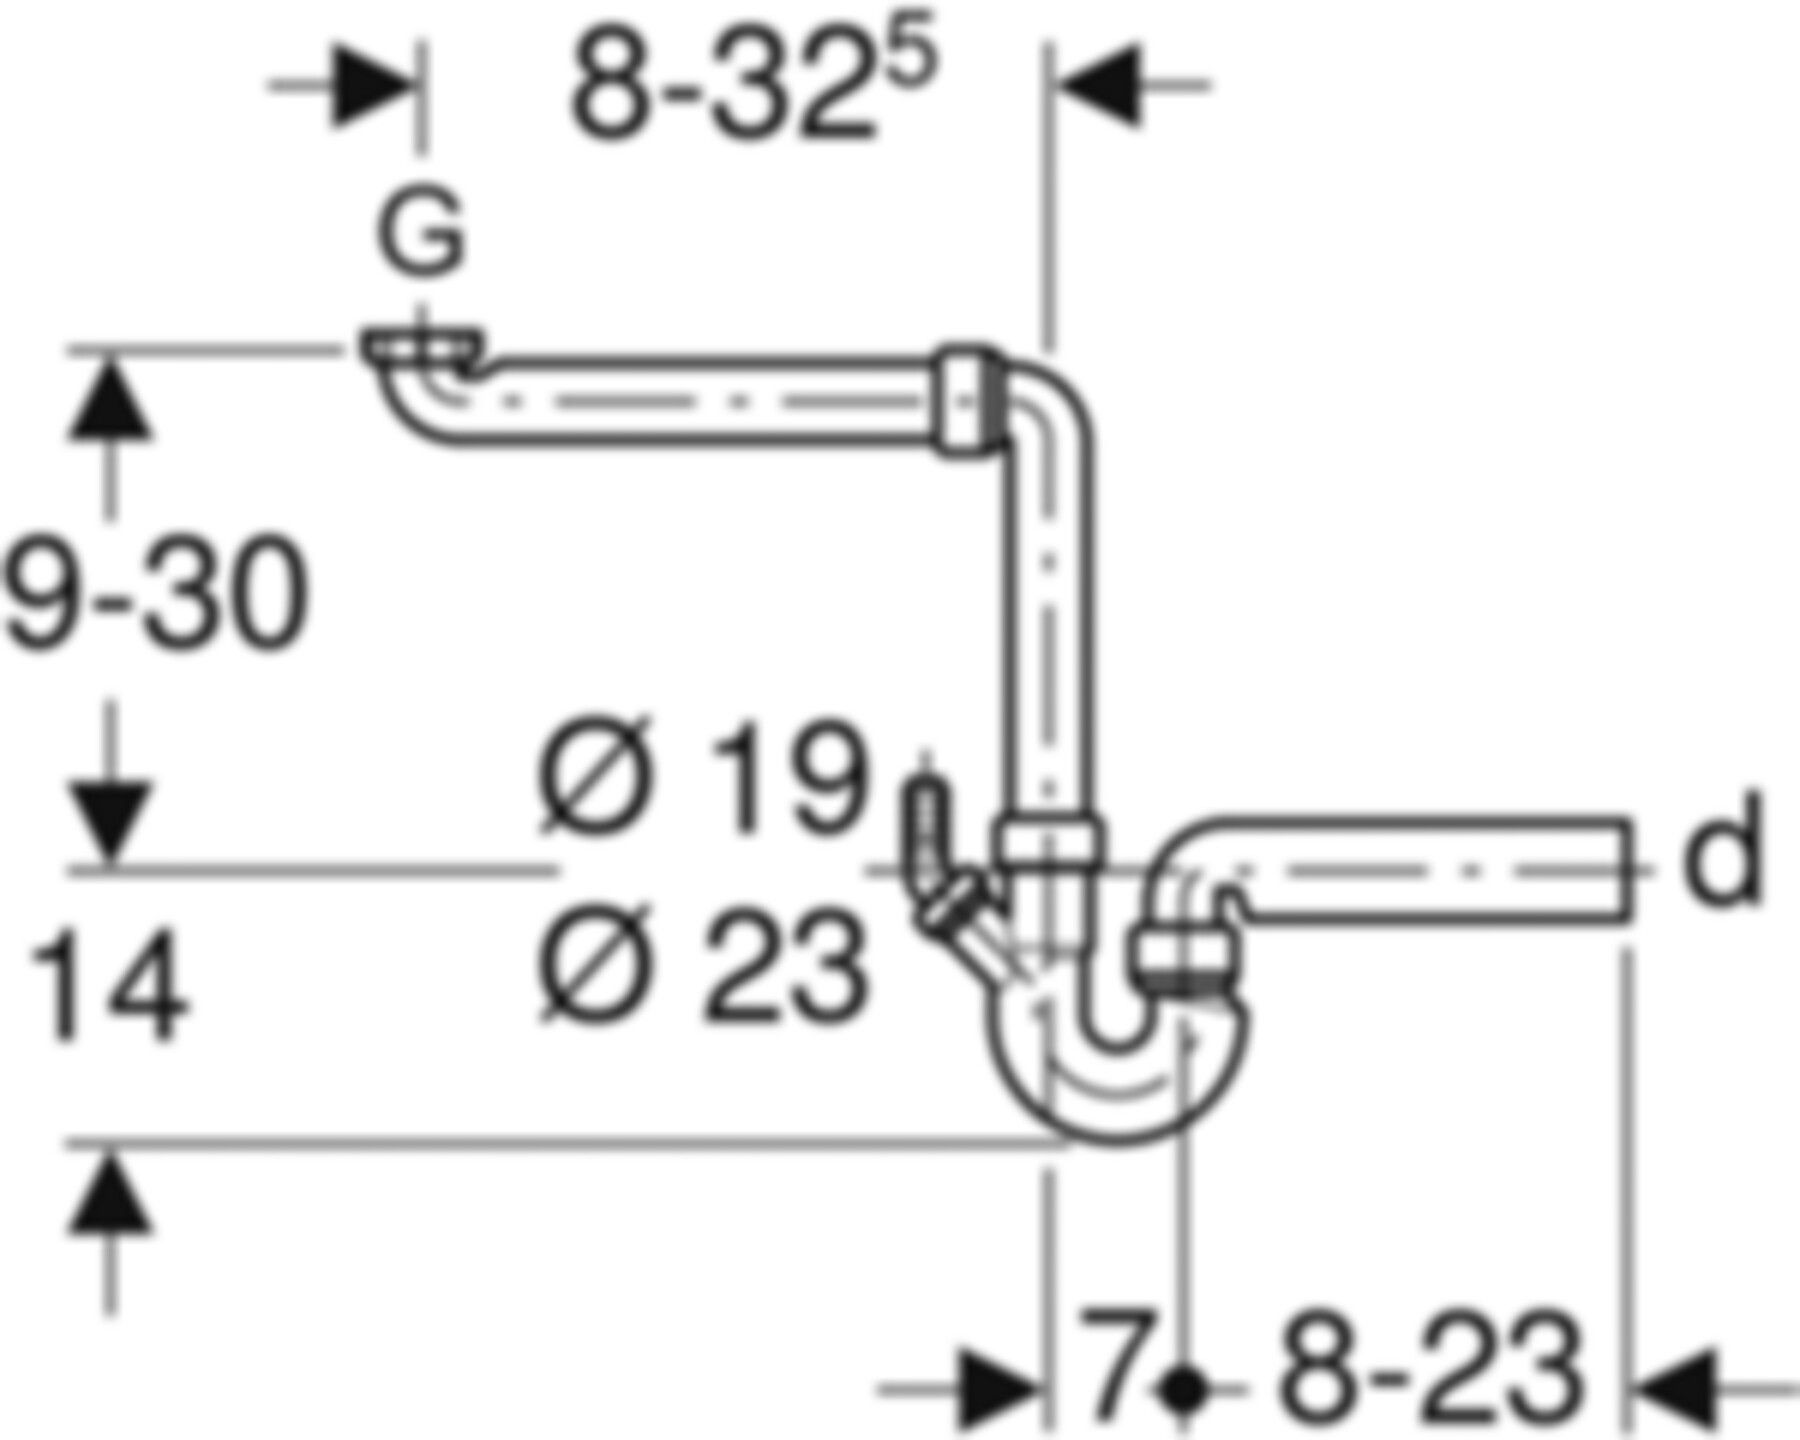 Spültischsifongarnitur PP 1-teilig d 56mm - 2" 152.802.06.1 - Geberit-Sifon + Apparateanschlüsse